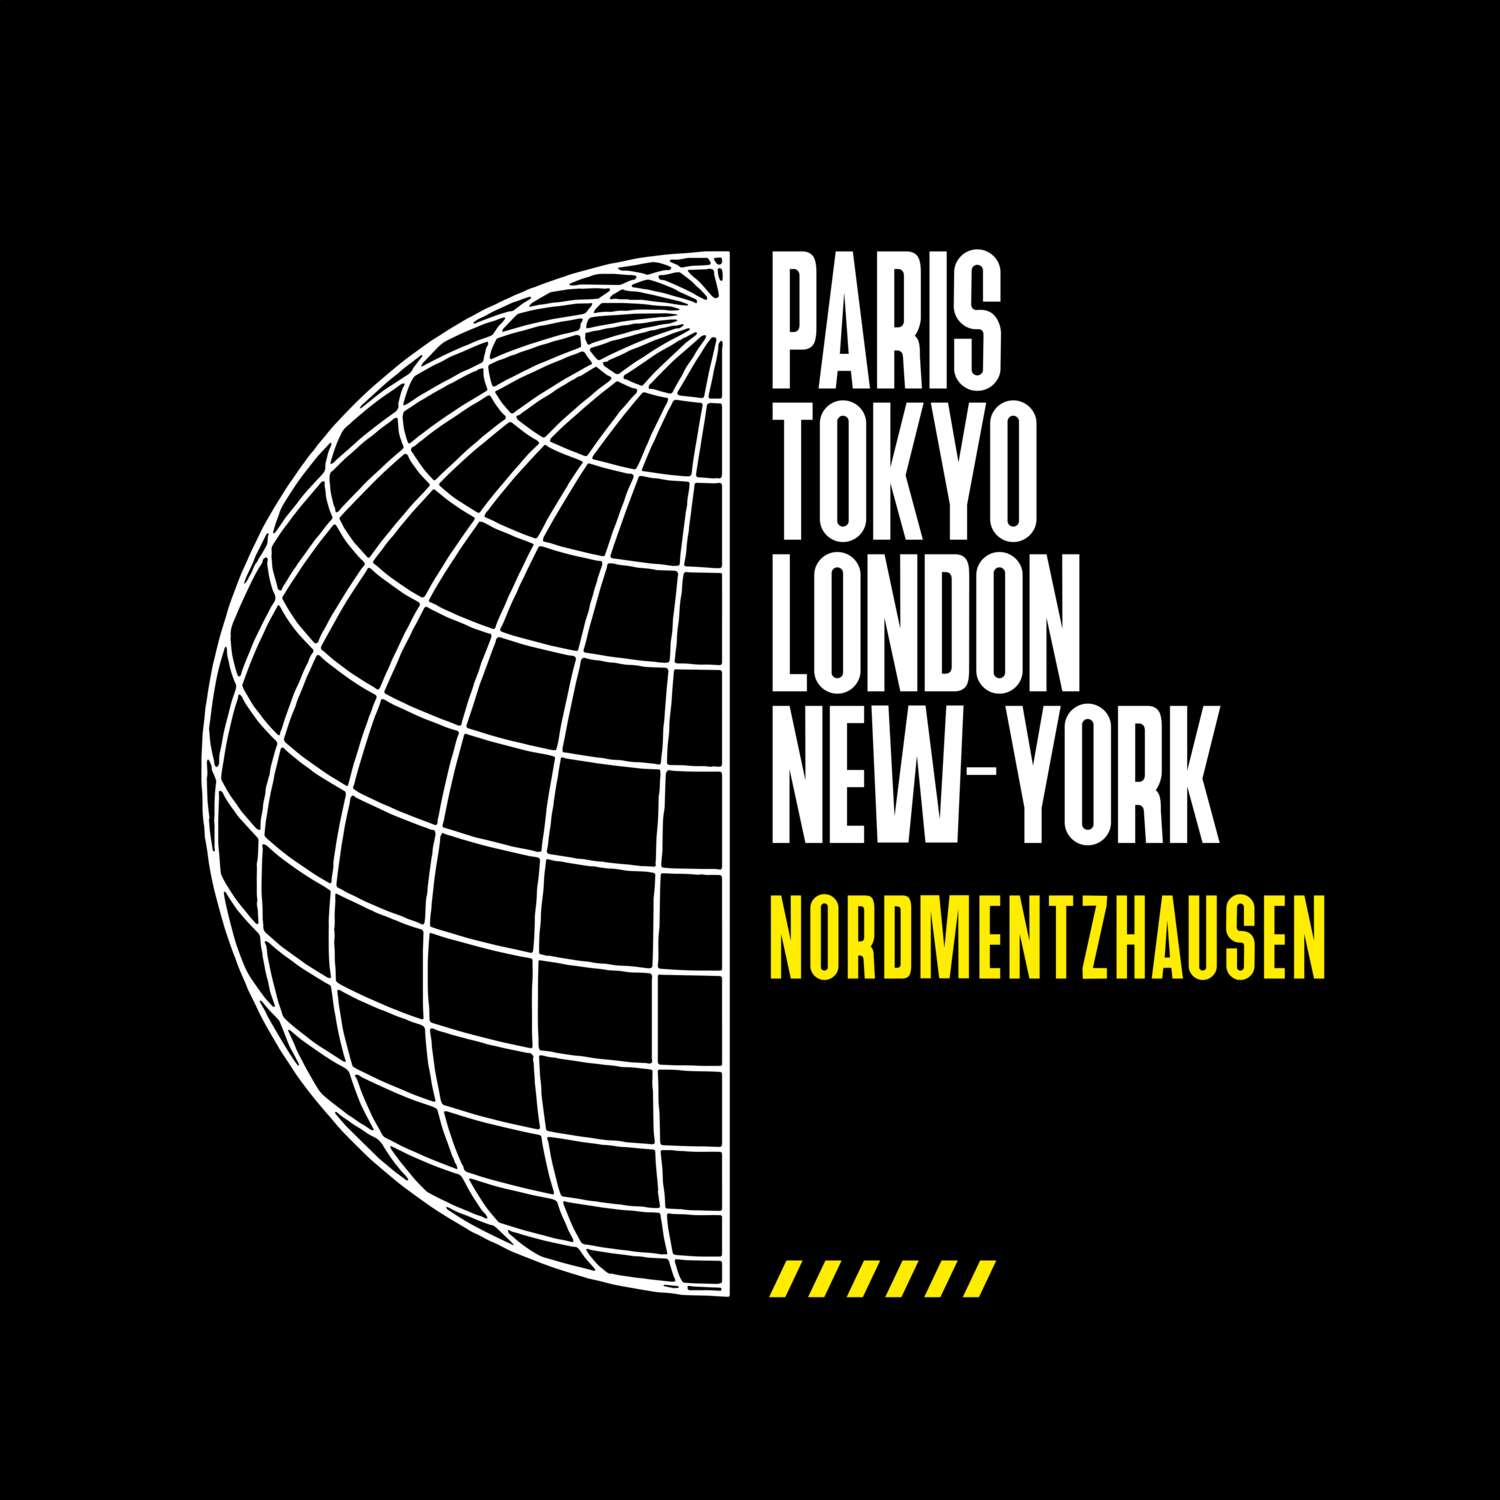 Nordmentzhausen T-Shirt »Paris Tokyo London«